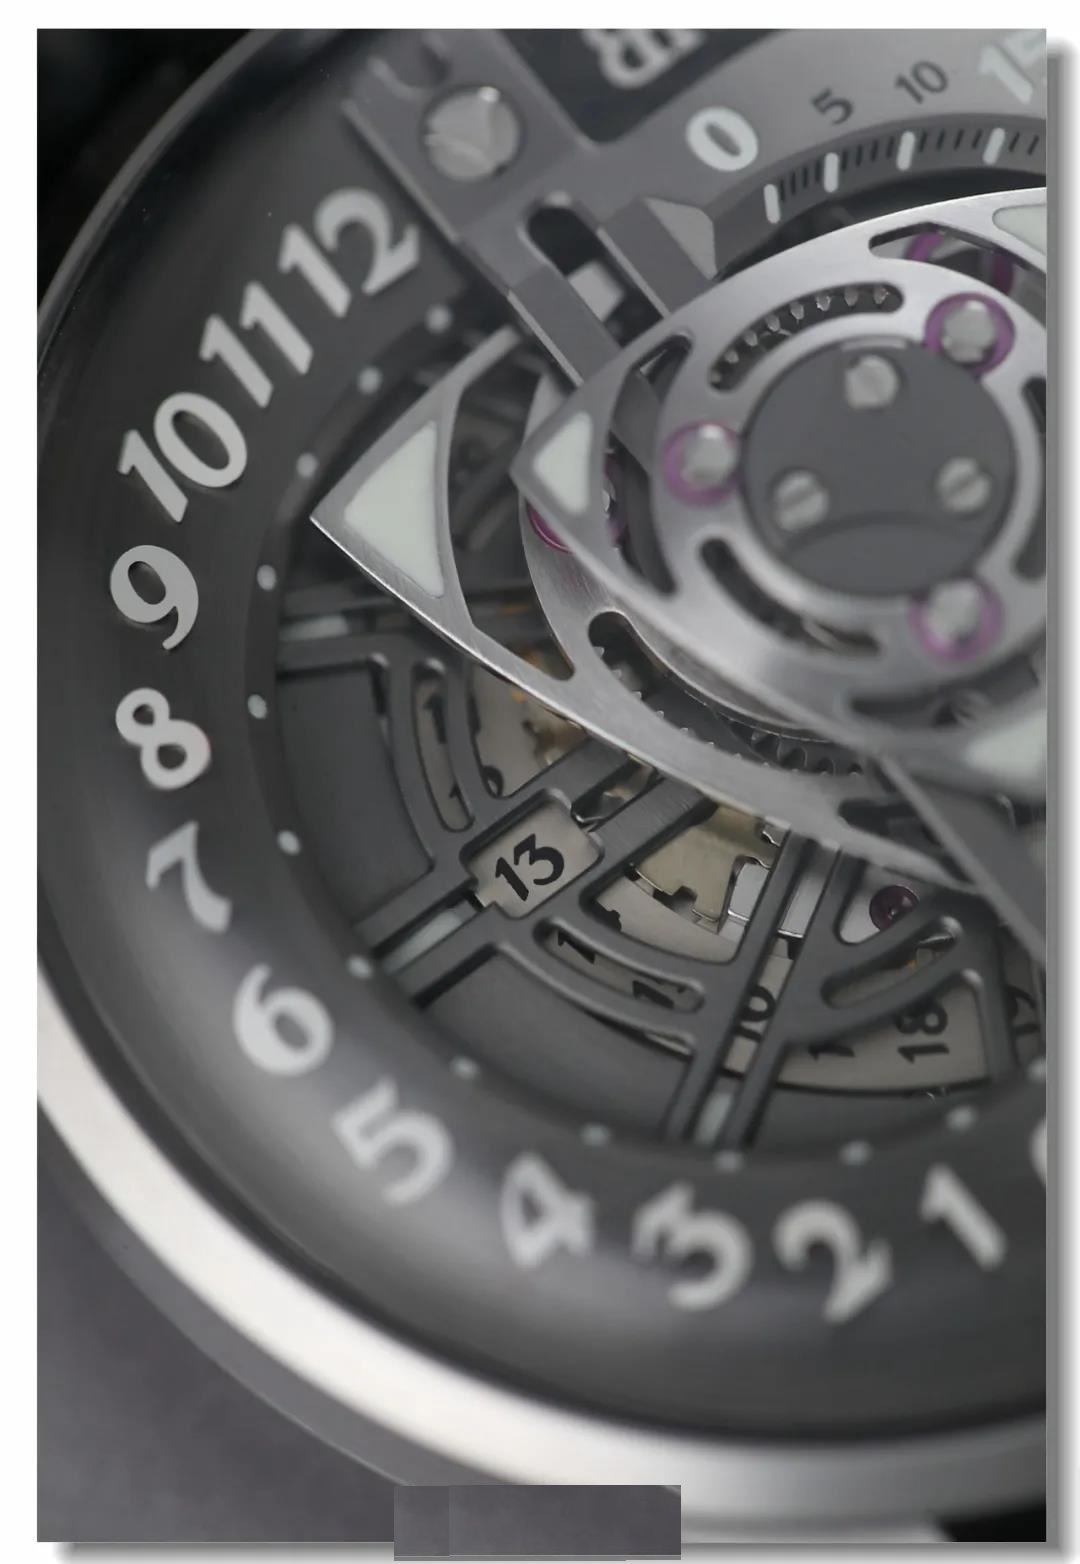 这块手表刷新了我对中国手表制造的印象